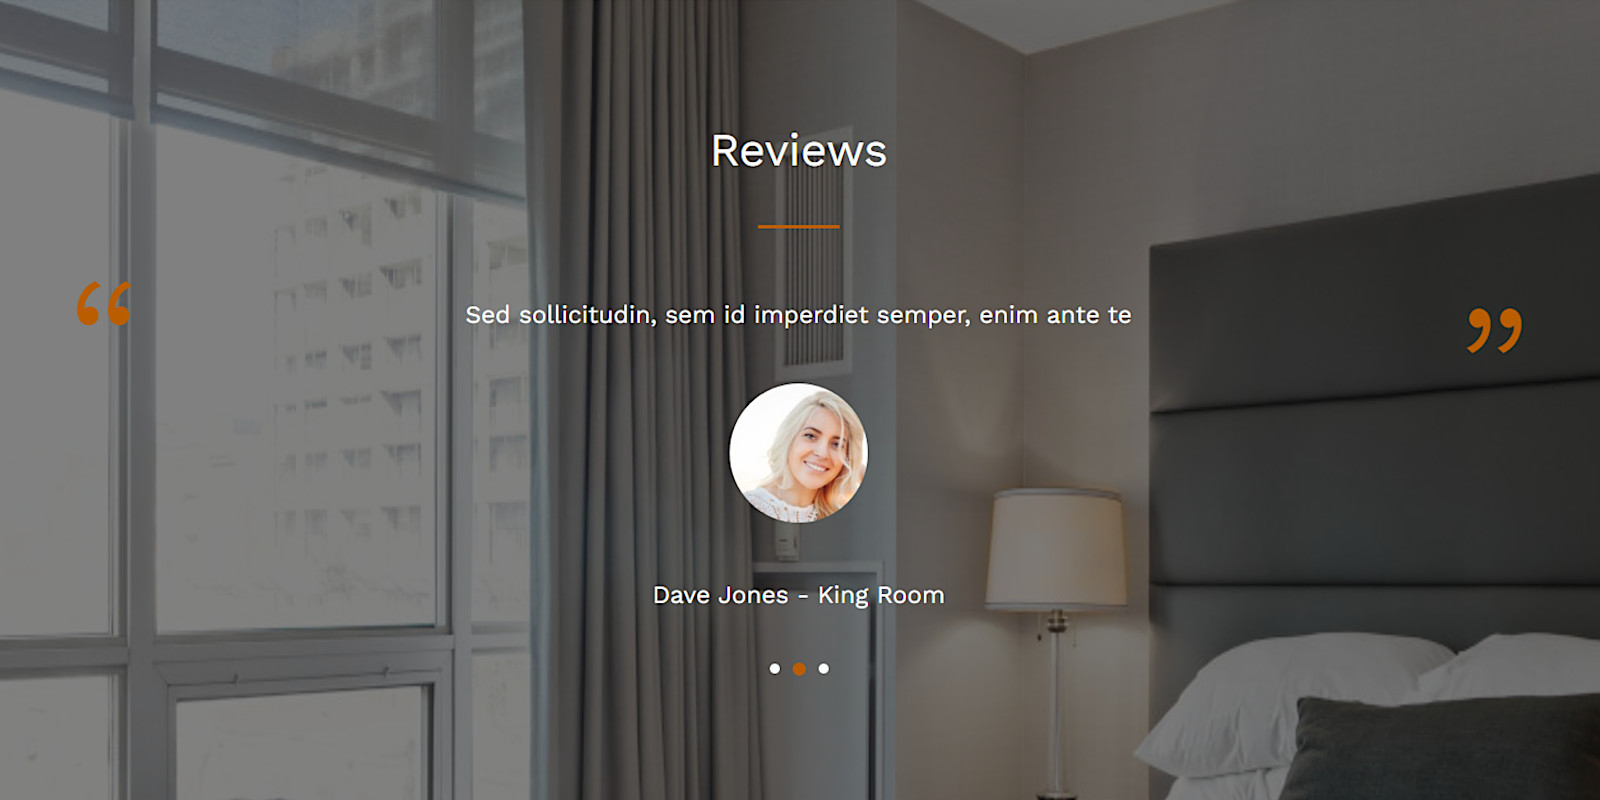 ตัวอย่างรีวิว (Reviews): Lots of Layouts & Elements - ระบบจองที่พัก จองโรงแรม (Hotel Booking) มาพร้อมเว็บไซต์สาธิตฉบับเต็มรวมอยู่ด้วย (Full demo website) และมีเลย์เอาต์และองค์ประกอบมากมาย (many layouts and elements) คุณจึงสร้างเว็บไซต์ได้อย่างง่ายดายโดยไม่ต้องเขียนโค้ดใดๆ